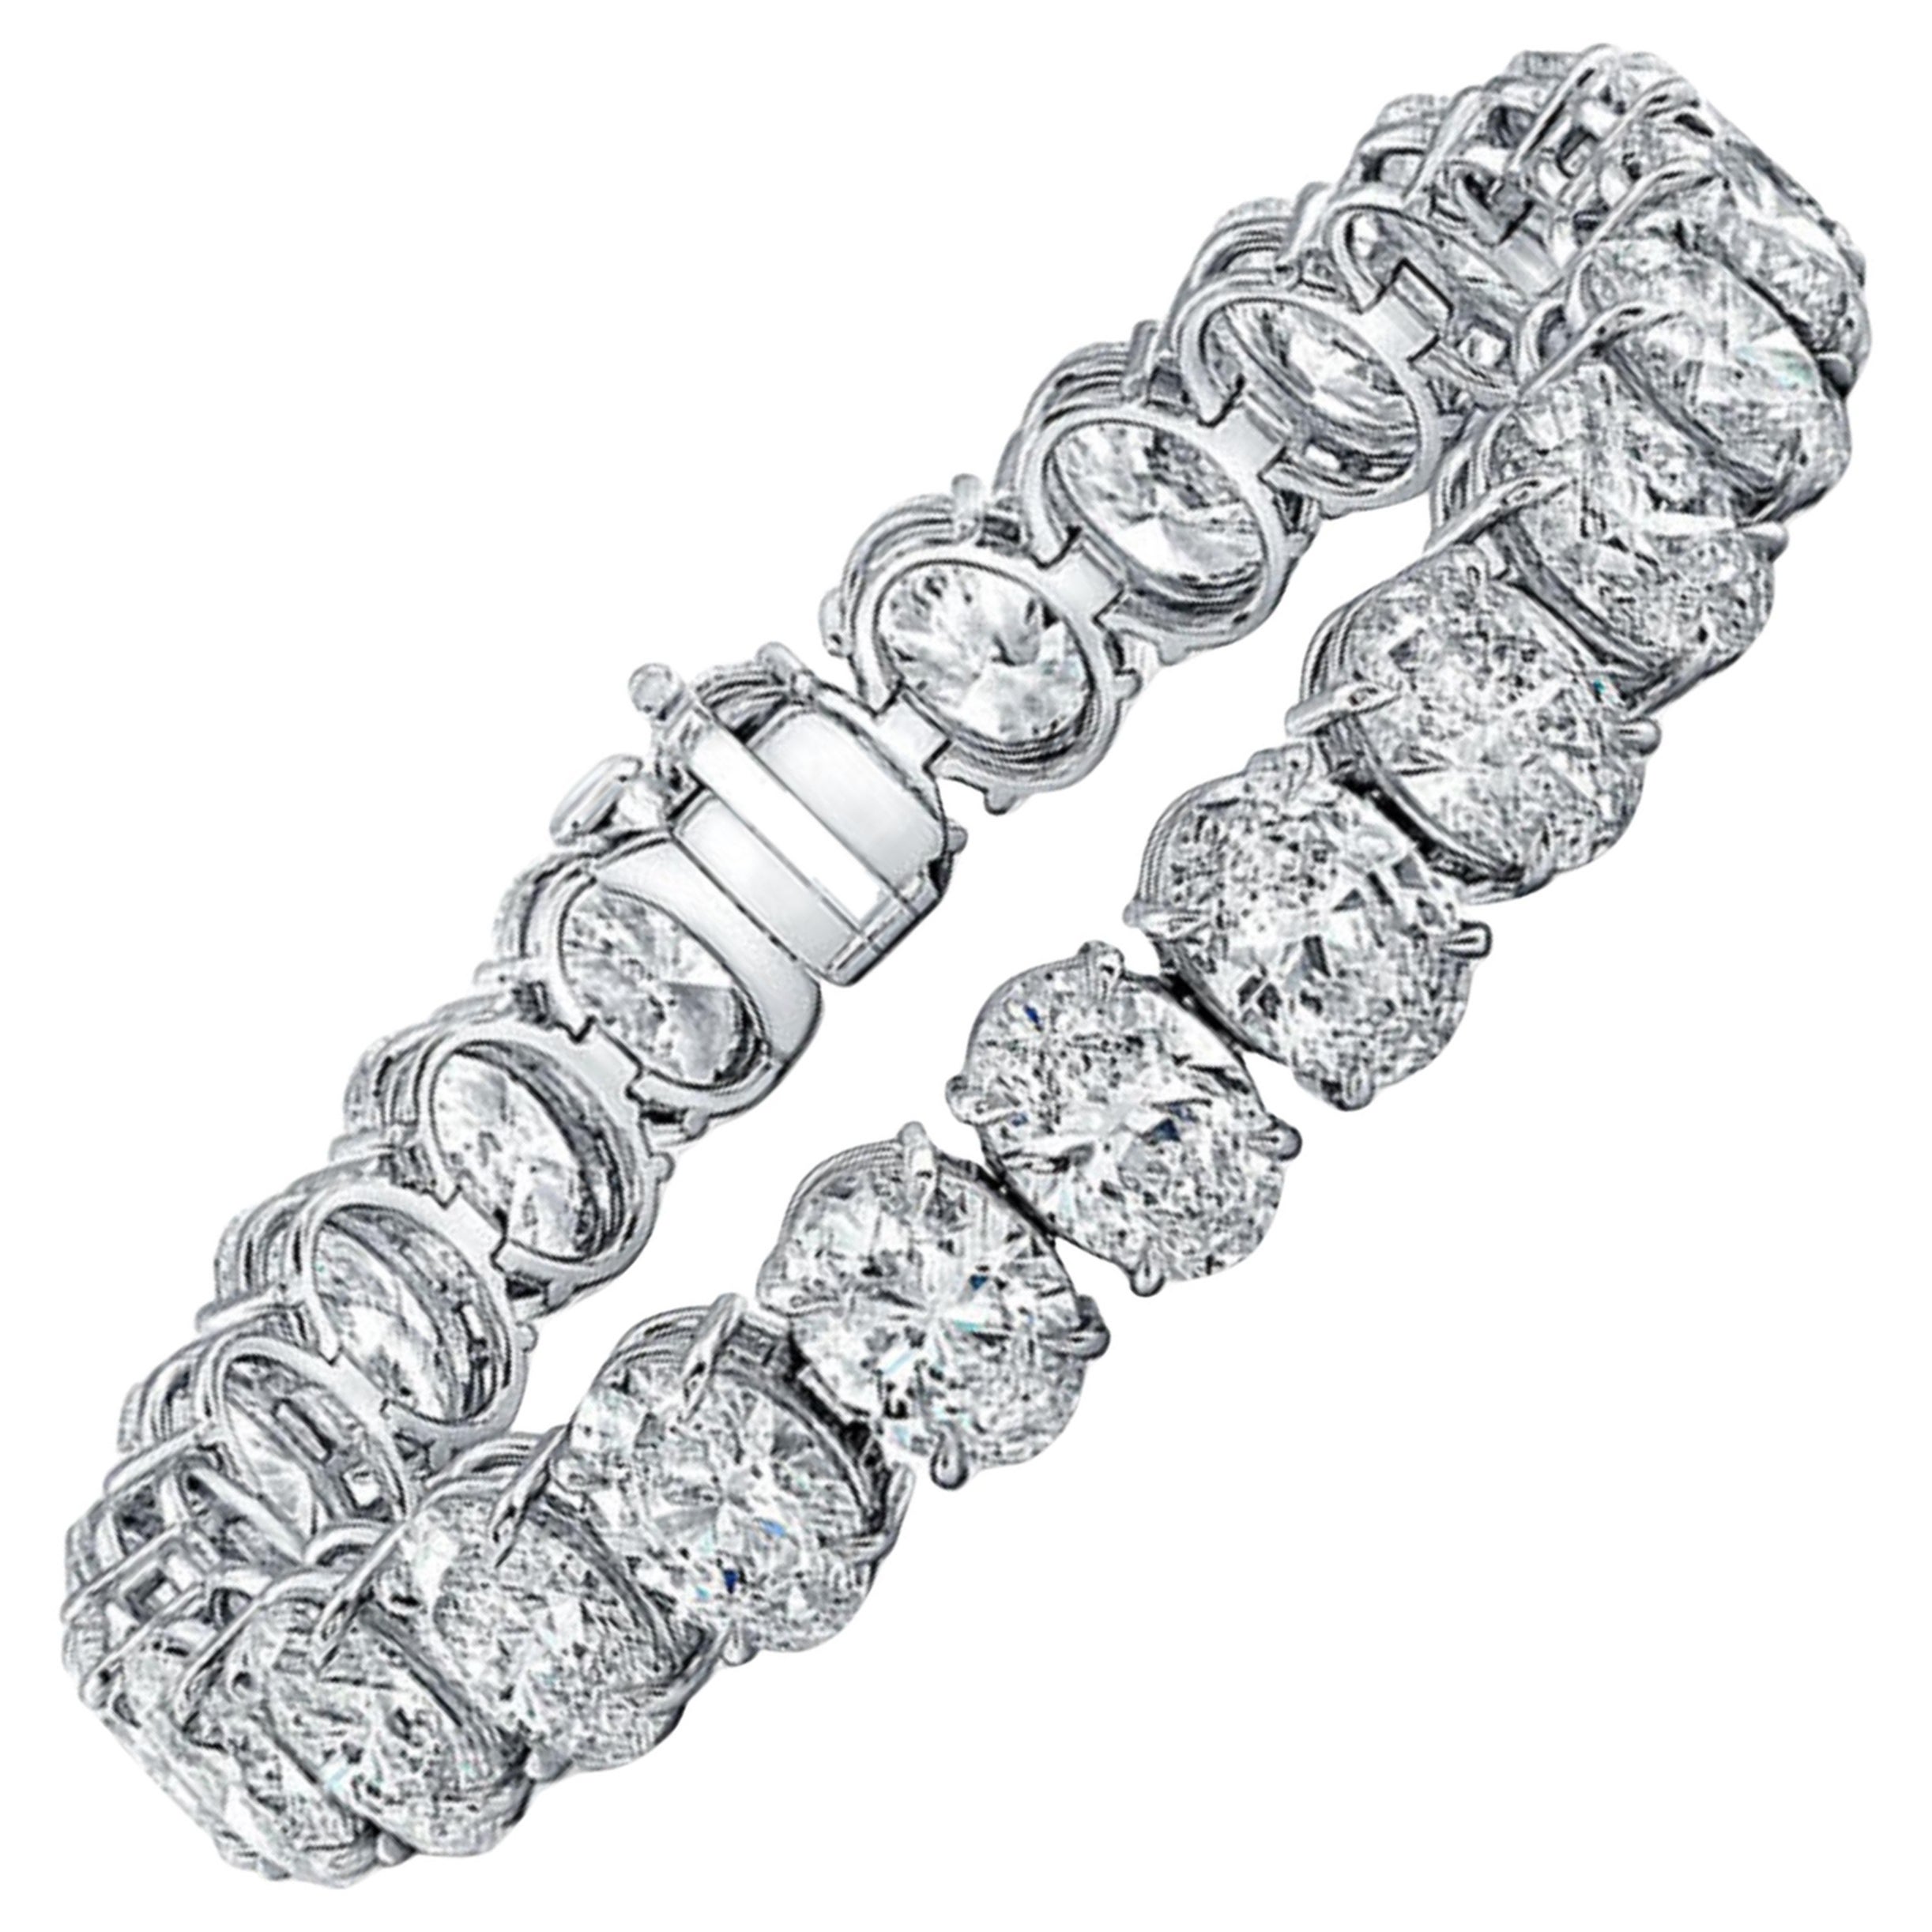 Platinarmband mit GIA-zertifiziertem 31 Karat Diamanten im Ovalschliff